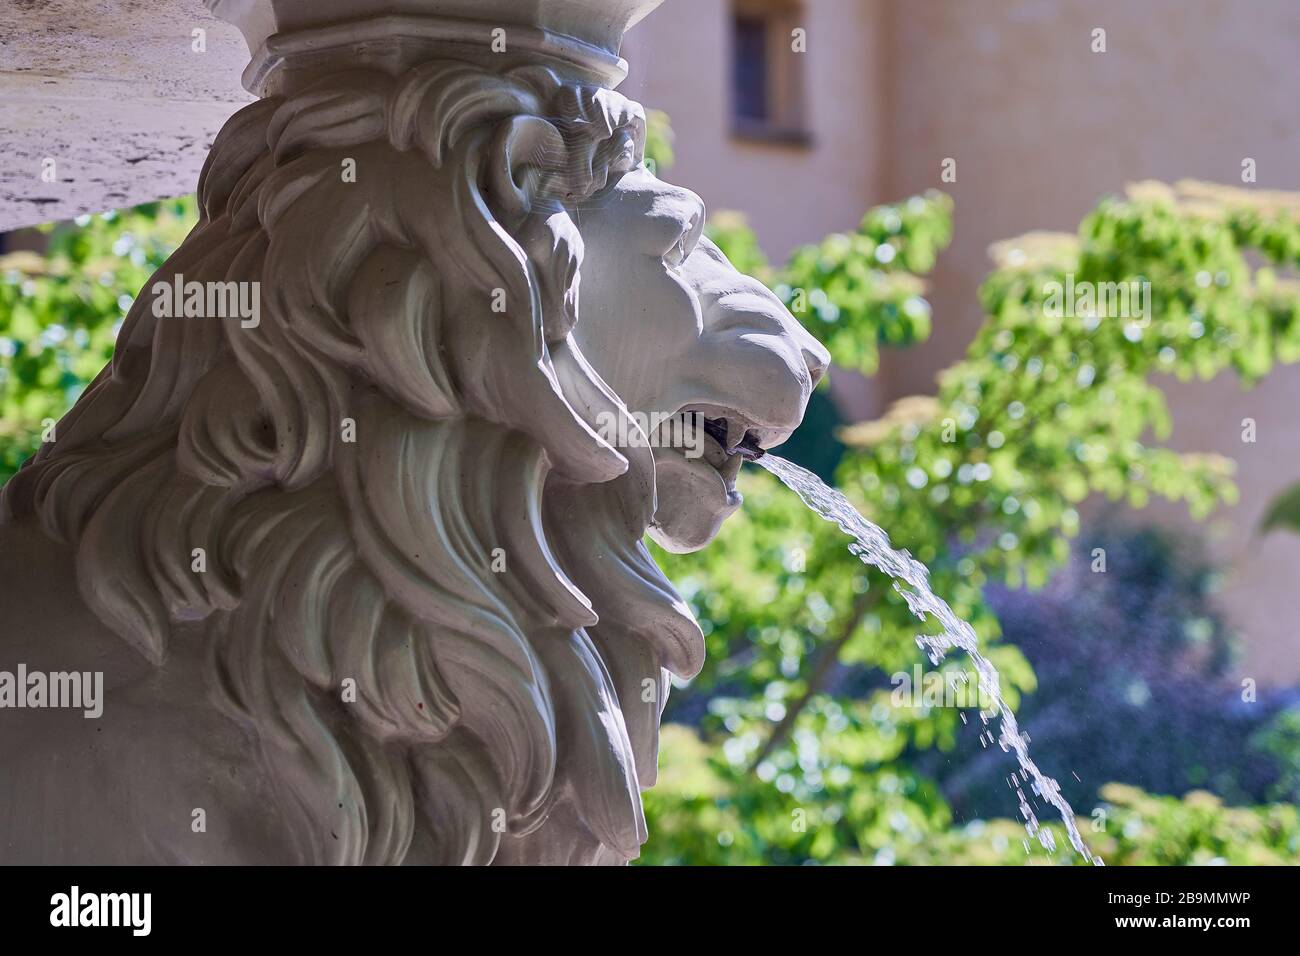 Ein Brunnen aus Witzstein in Form eines Löwen, Wasser aus dem Löwenmunde. Stockfoto